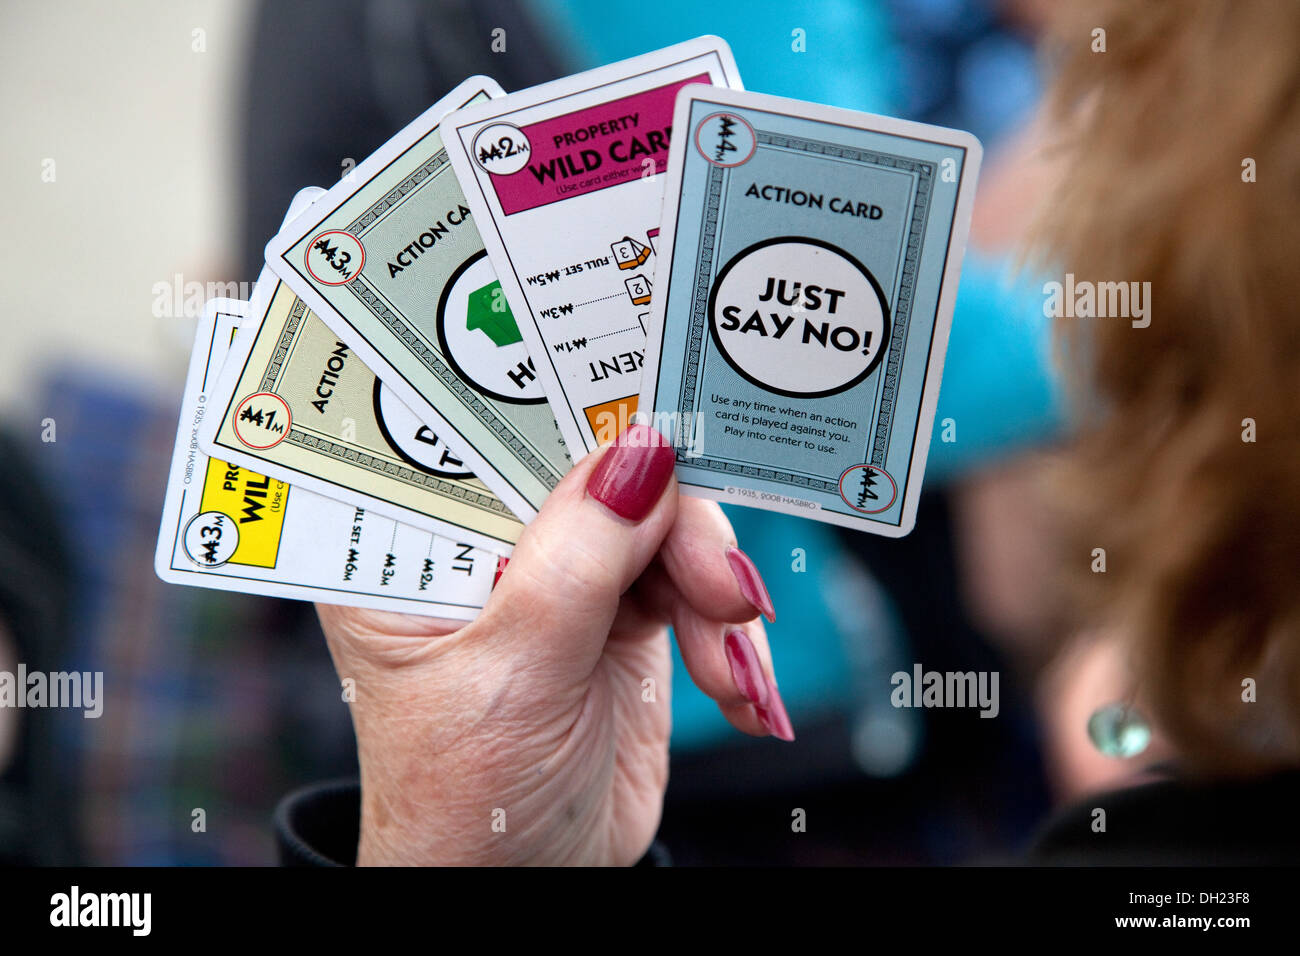 Giocatore in possesso della 'BASTA DIRE NO' carta azione nel corso di una trattativa di monopolio gioco di bordo. St Paul Minnesota MN USA Foto Stock